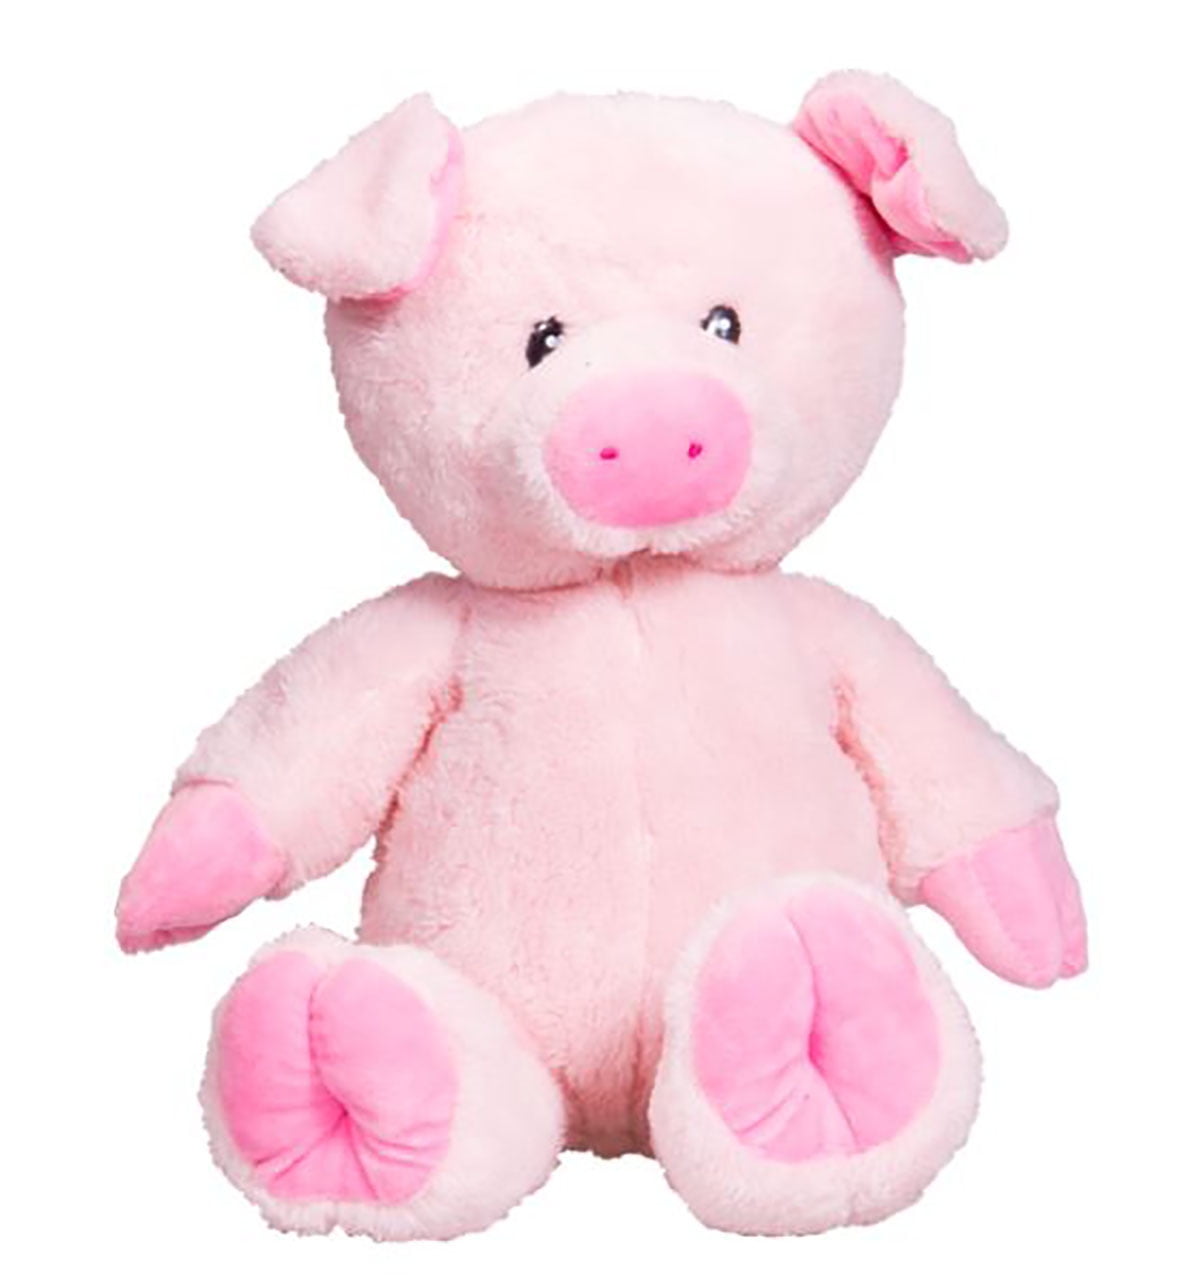 Cuddly Soft 16 inch Stuffed Pink Unicorn....We stuff 'em...you love 'em! Teddy 